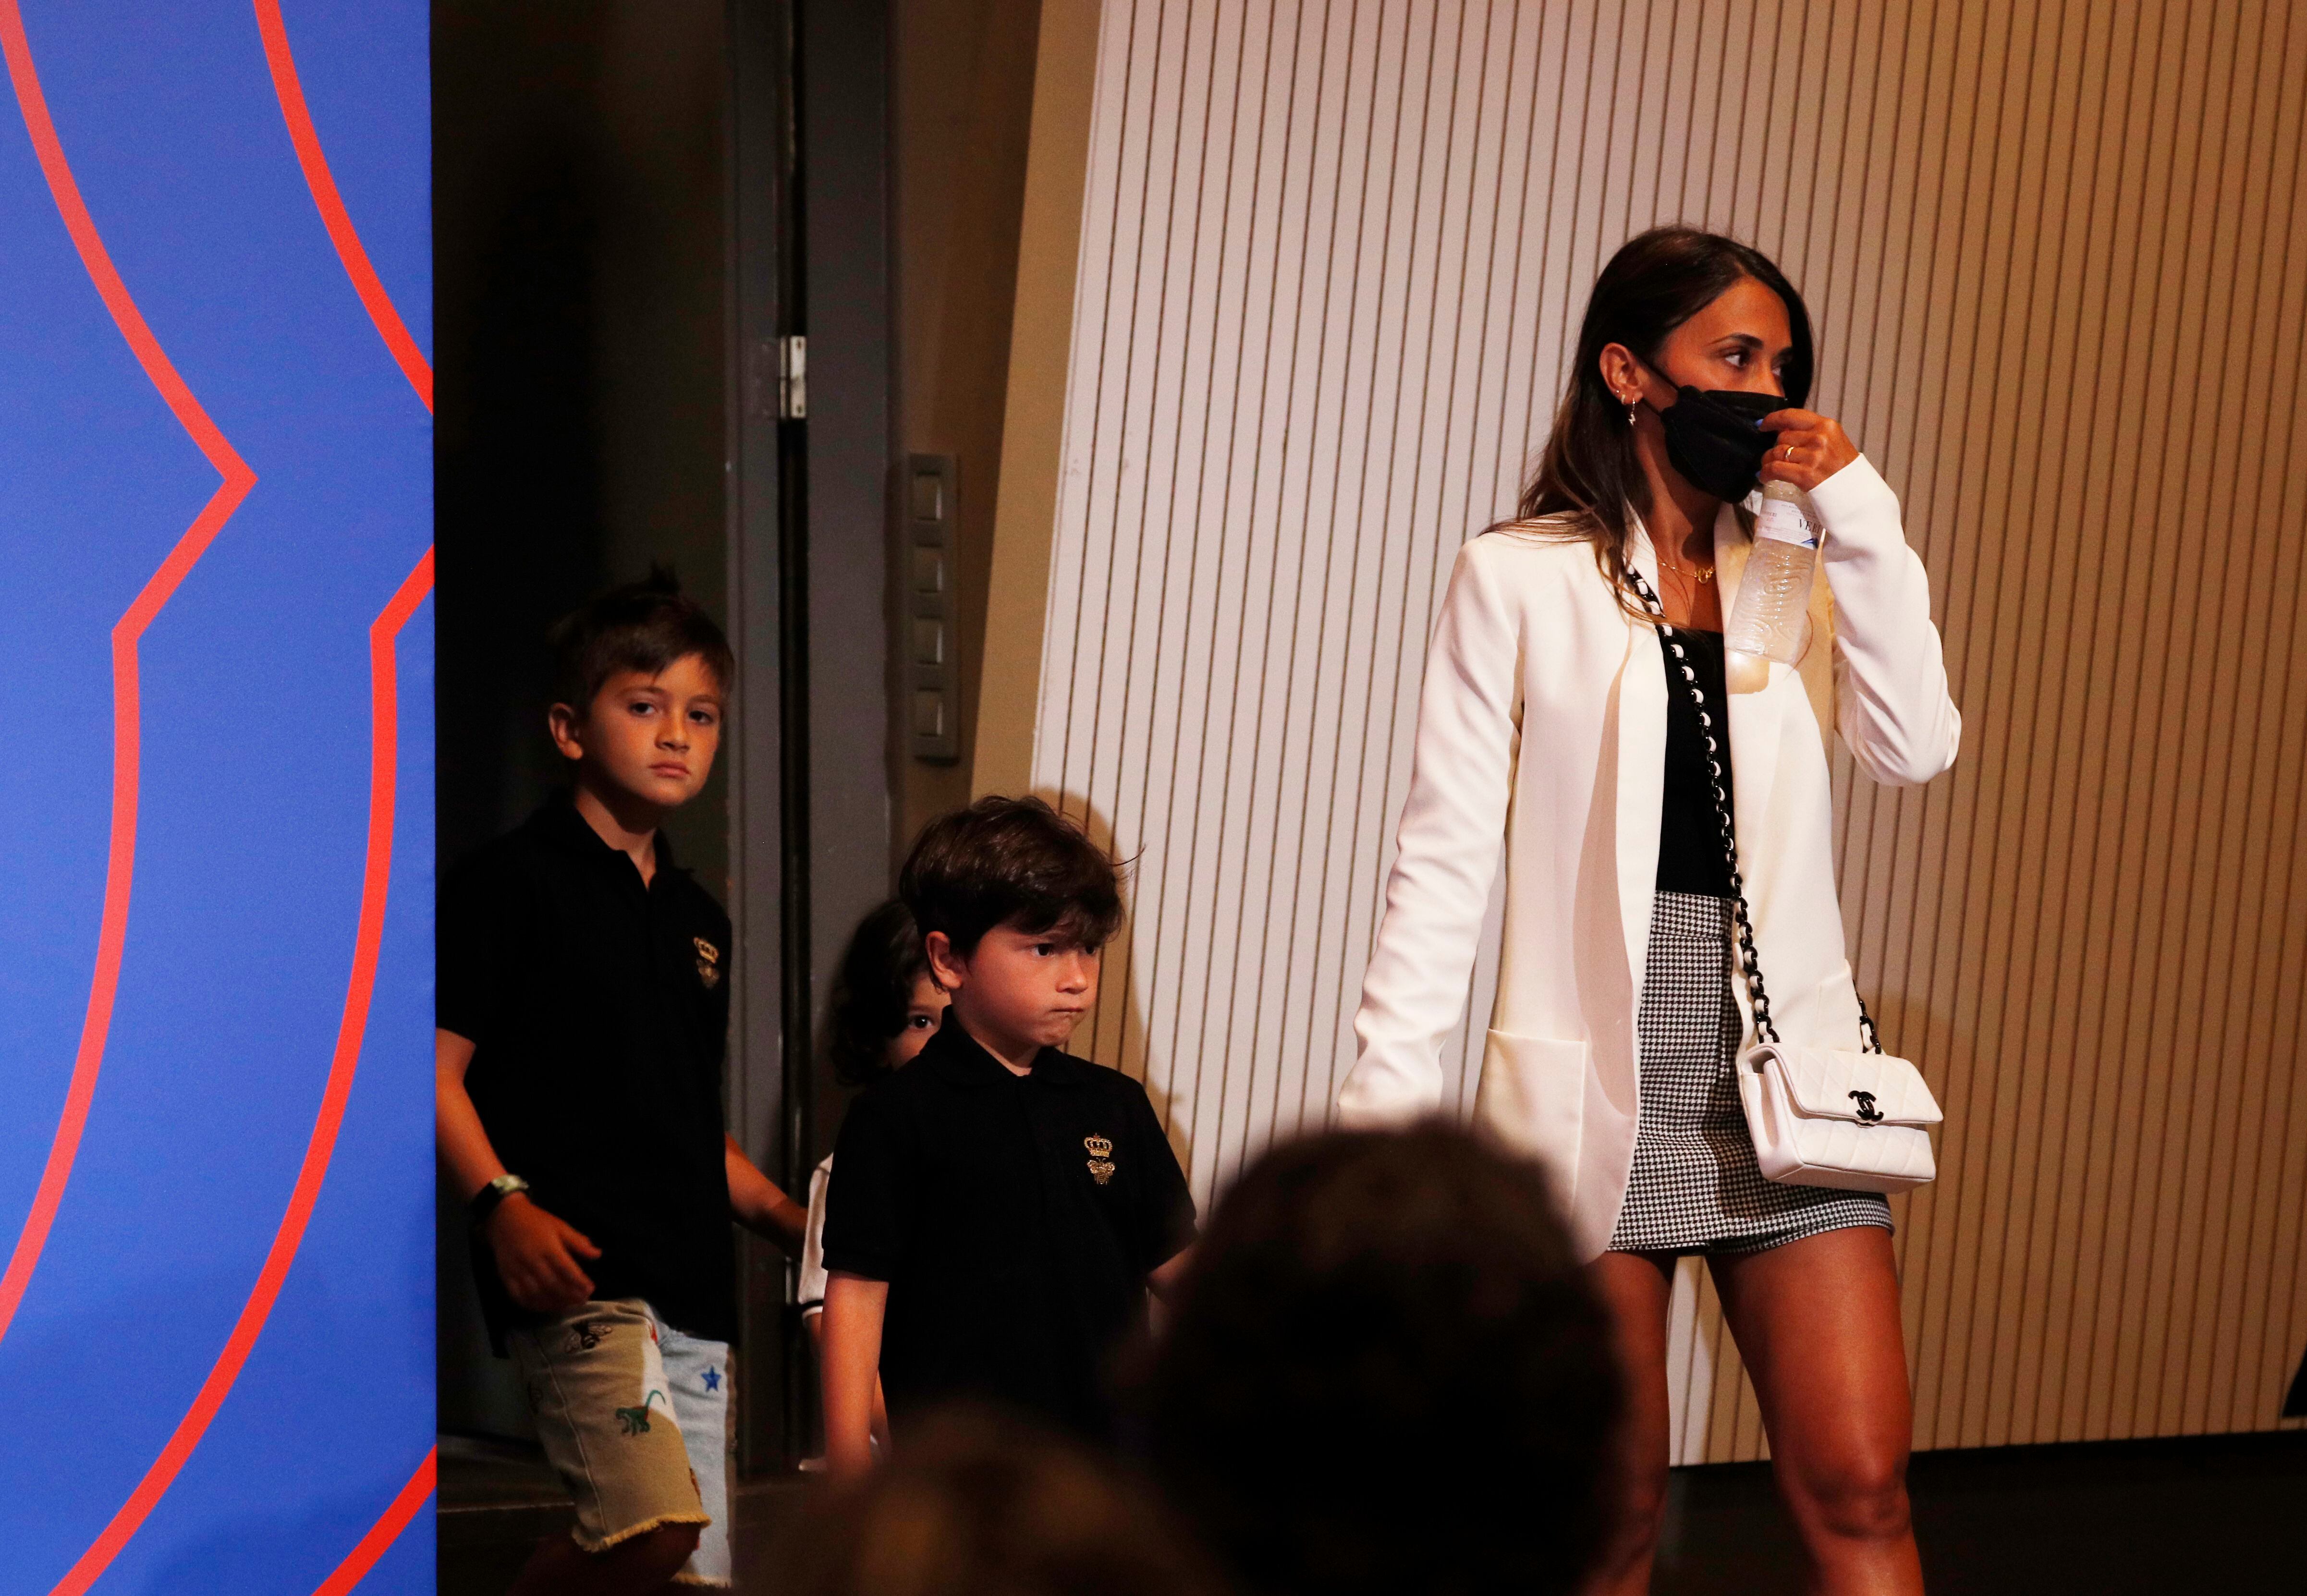 La esposa de Lionel Messi, Antonela Roccuzzo, y sus hijos antes de la conferencia de prensa de Lionel Messi en el Auditorio del Barcelona. La reacción de Mateo se volvió viral (REUTERS / Albert Gea)